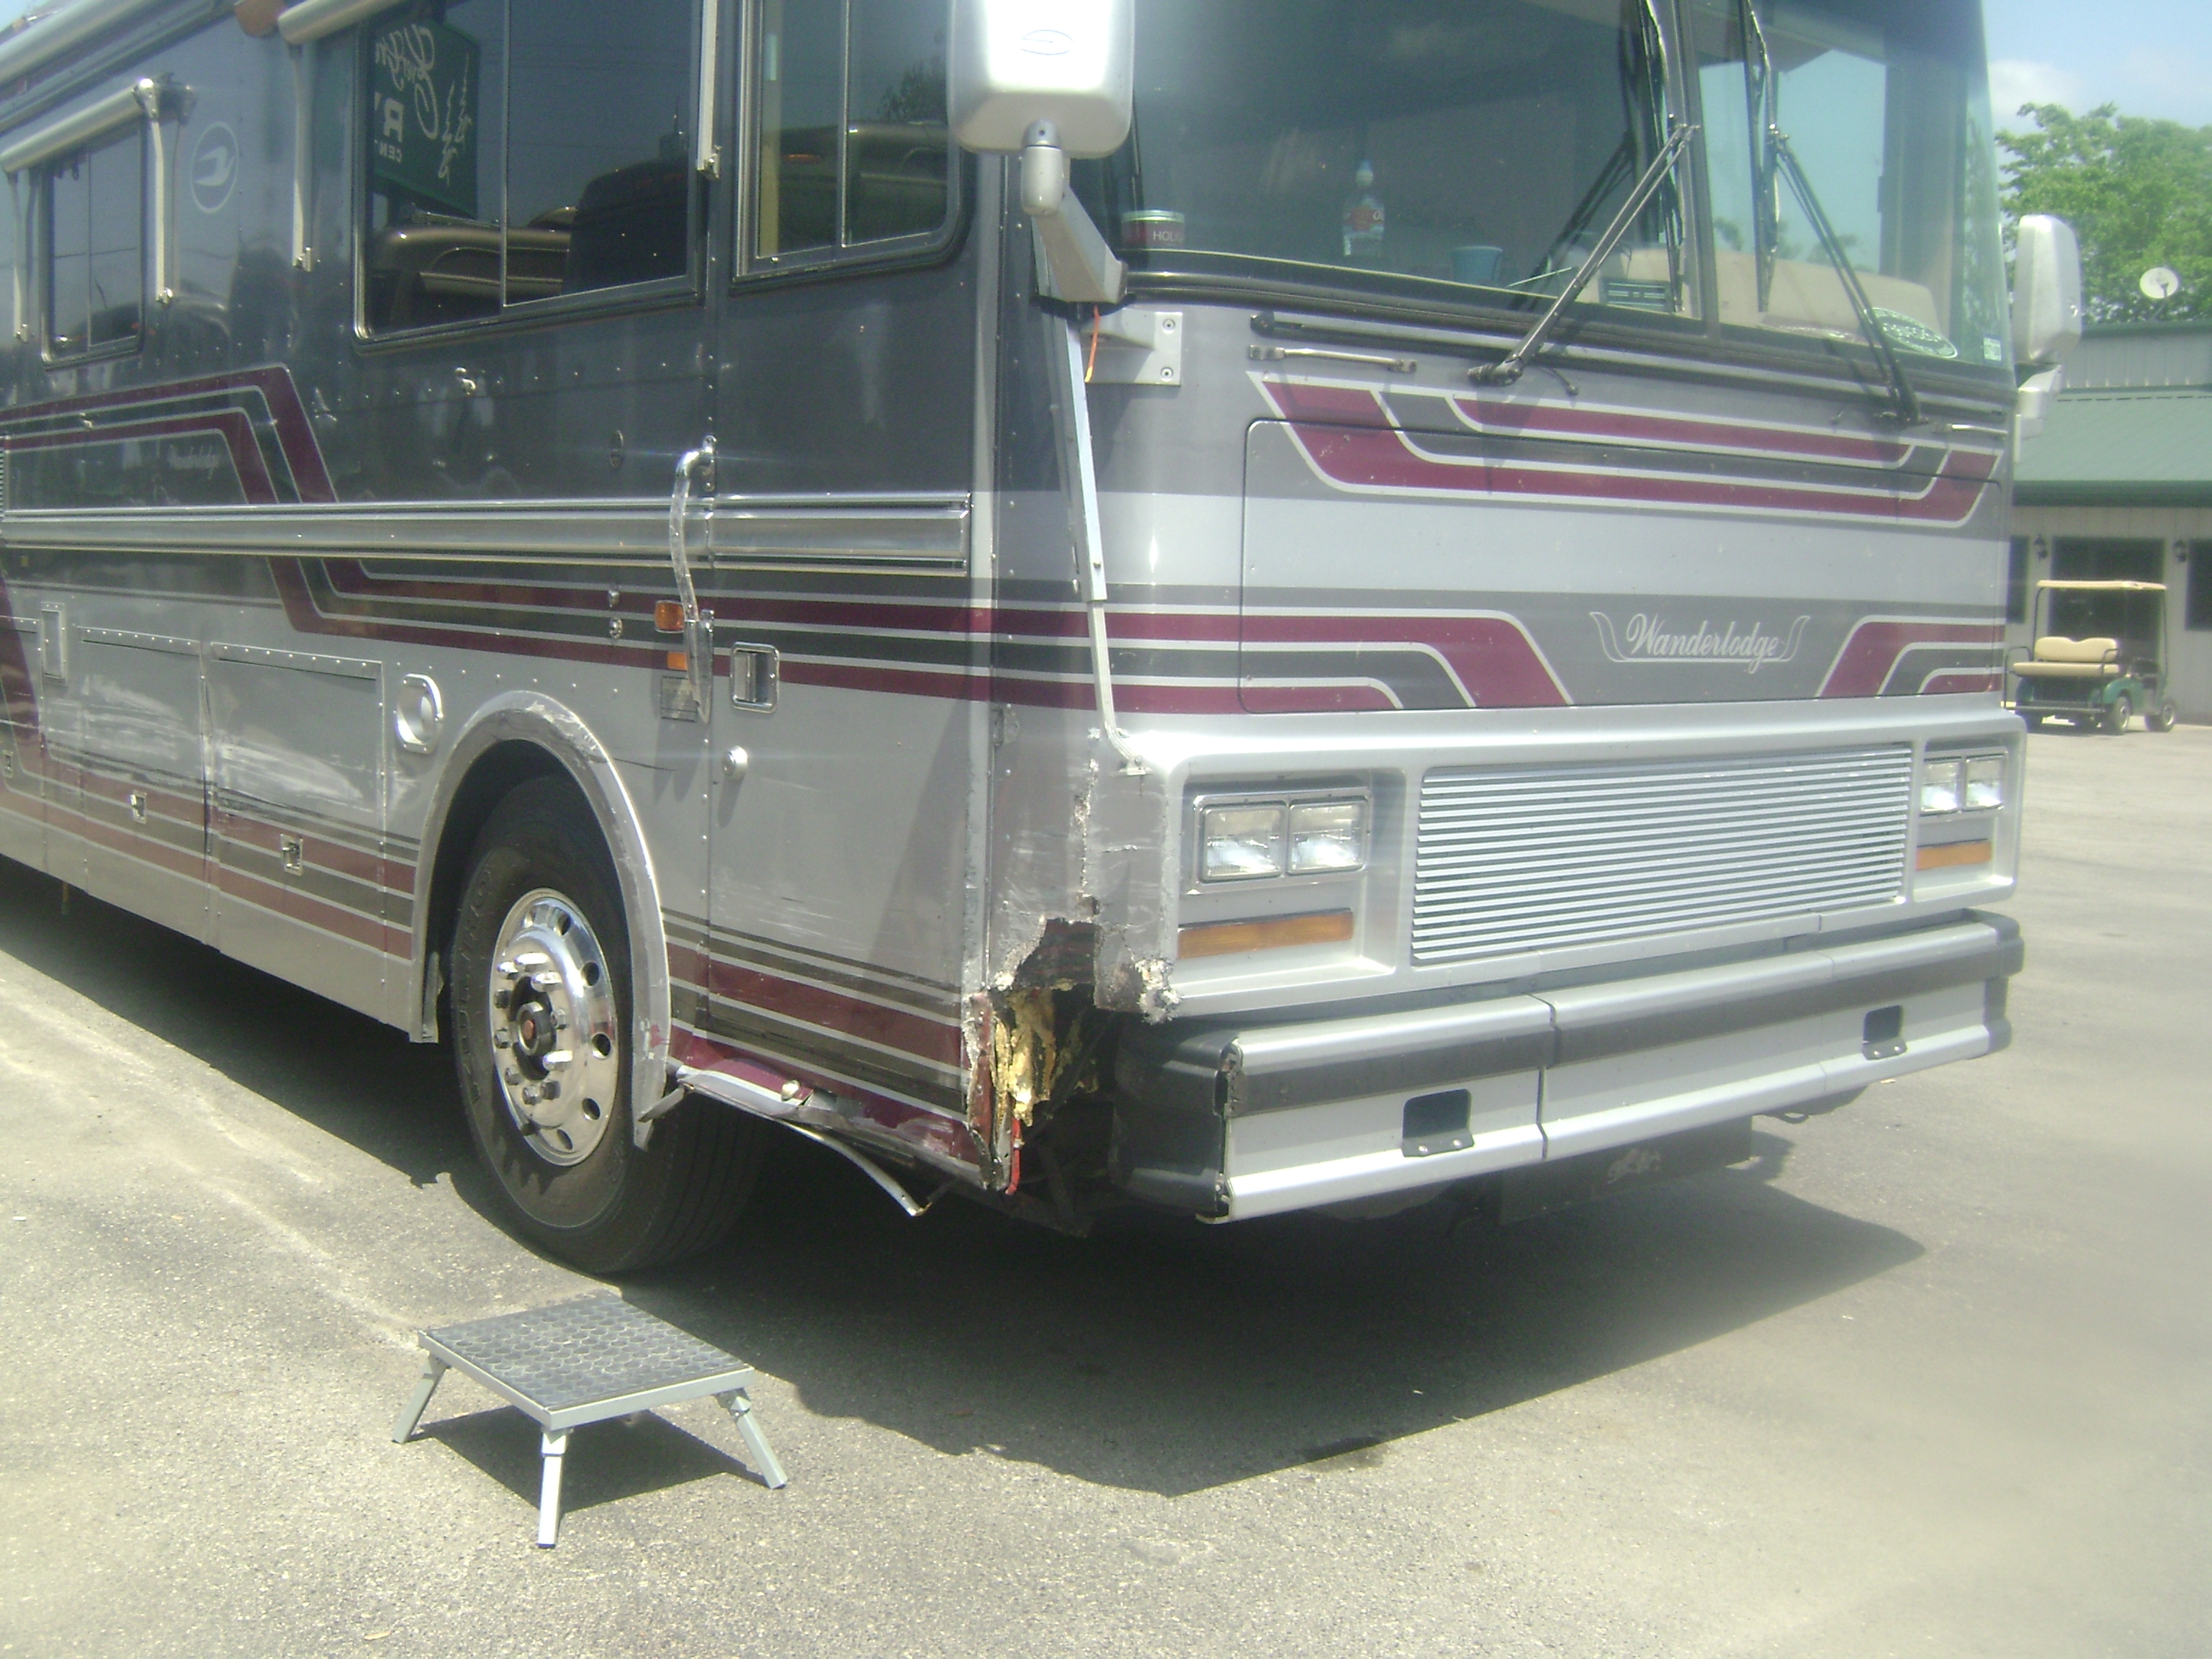 rv repairs, New Braunfels, TX 78130 CPR Inc. New Braunfels (830)660-2474